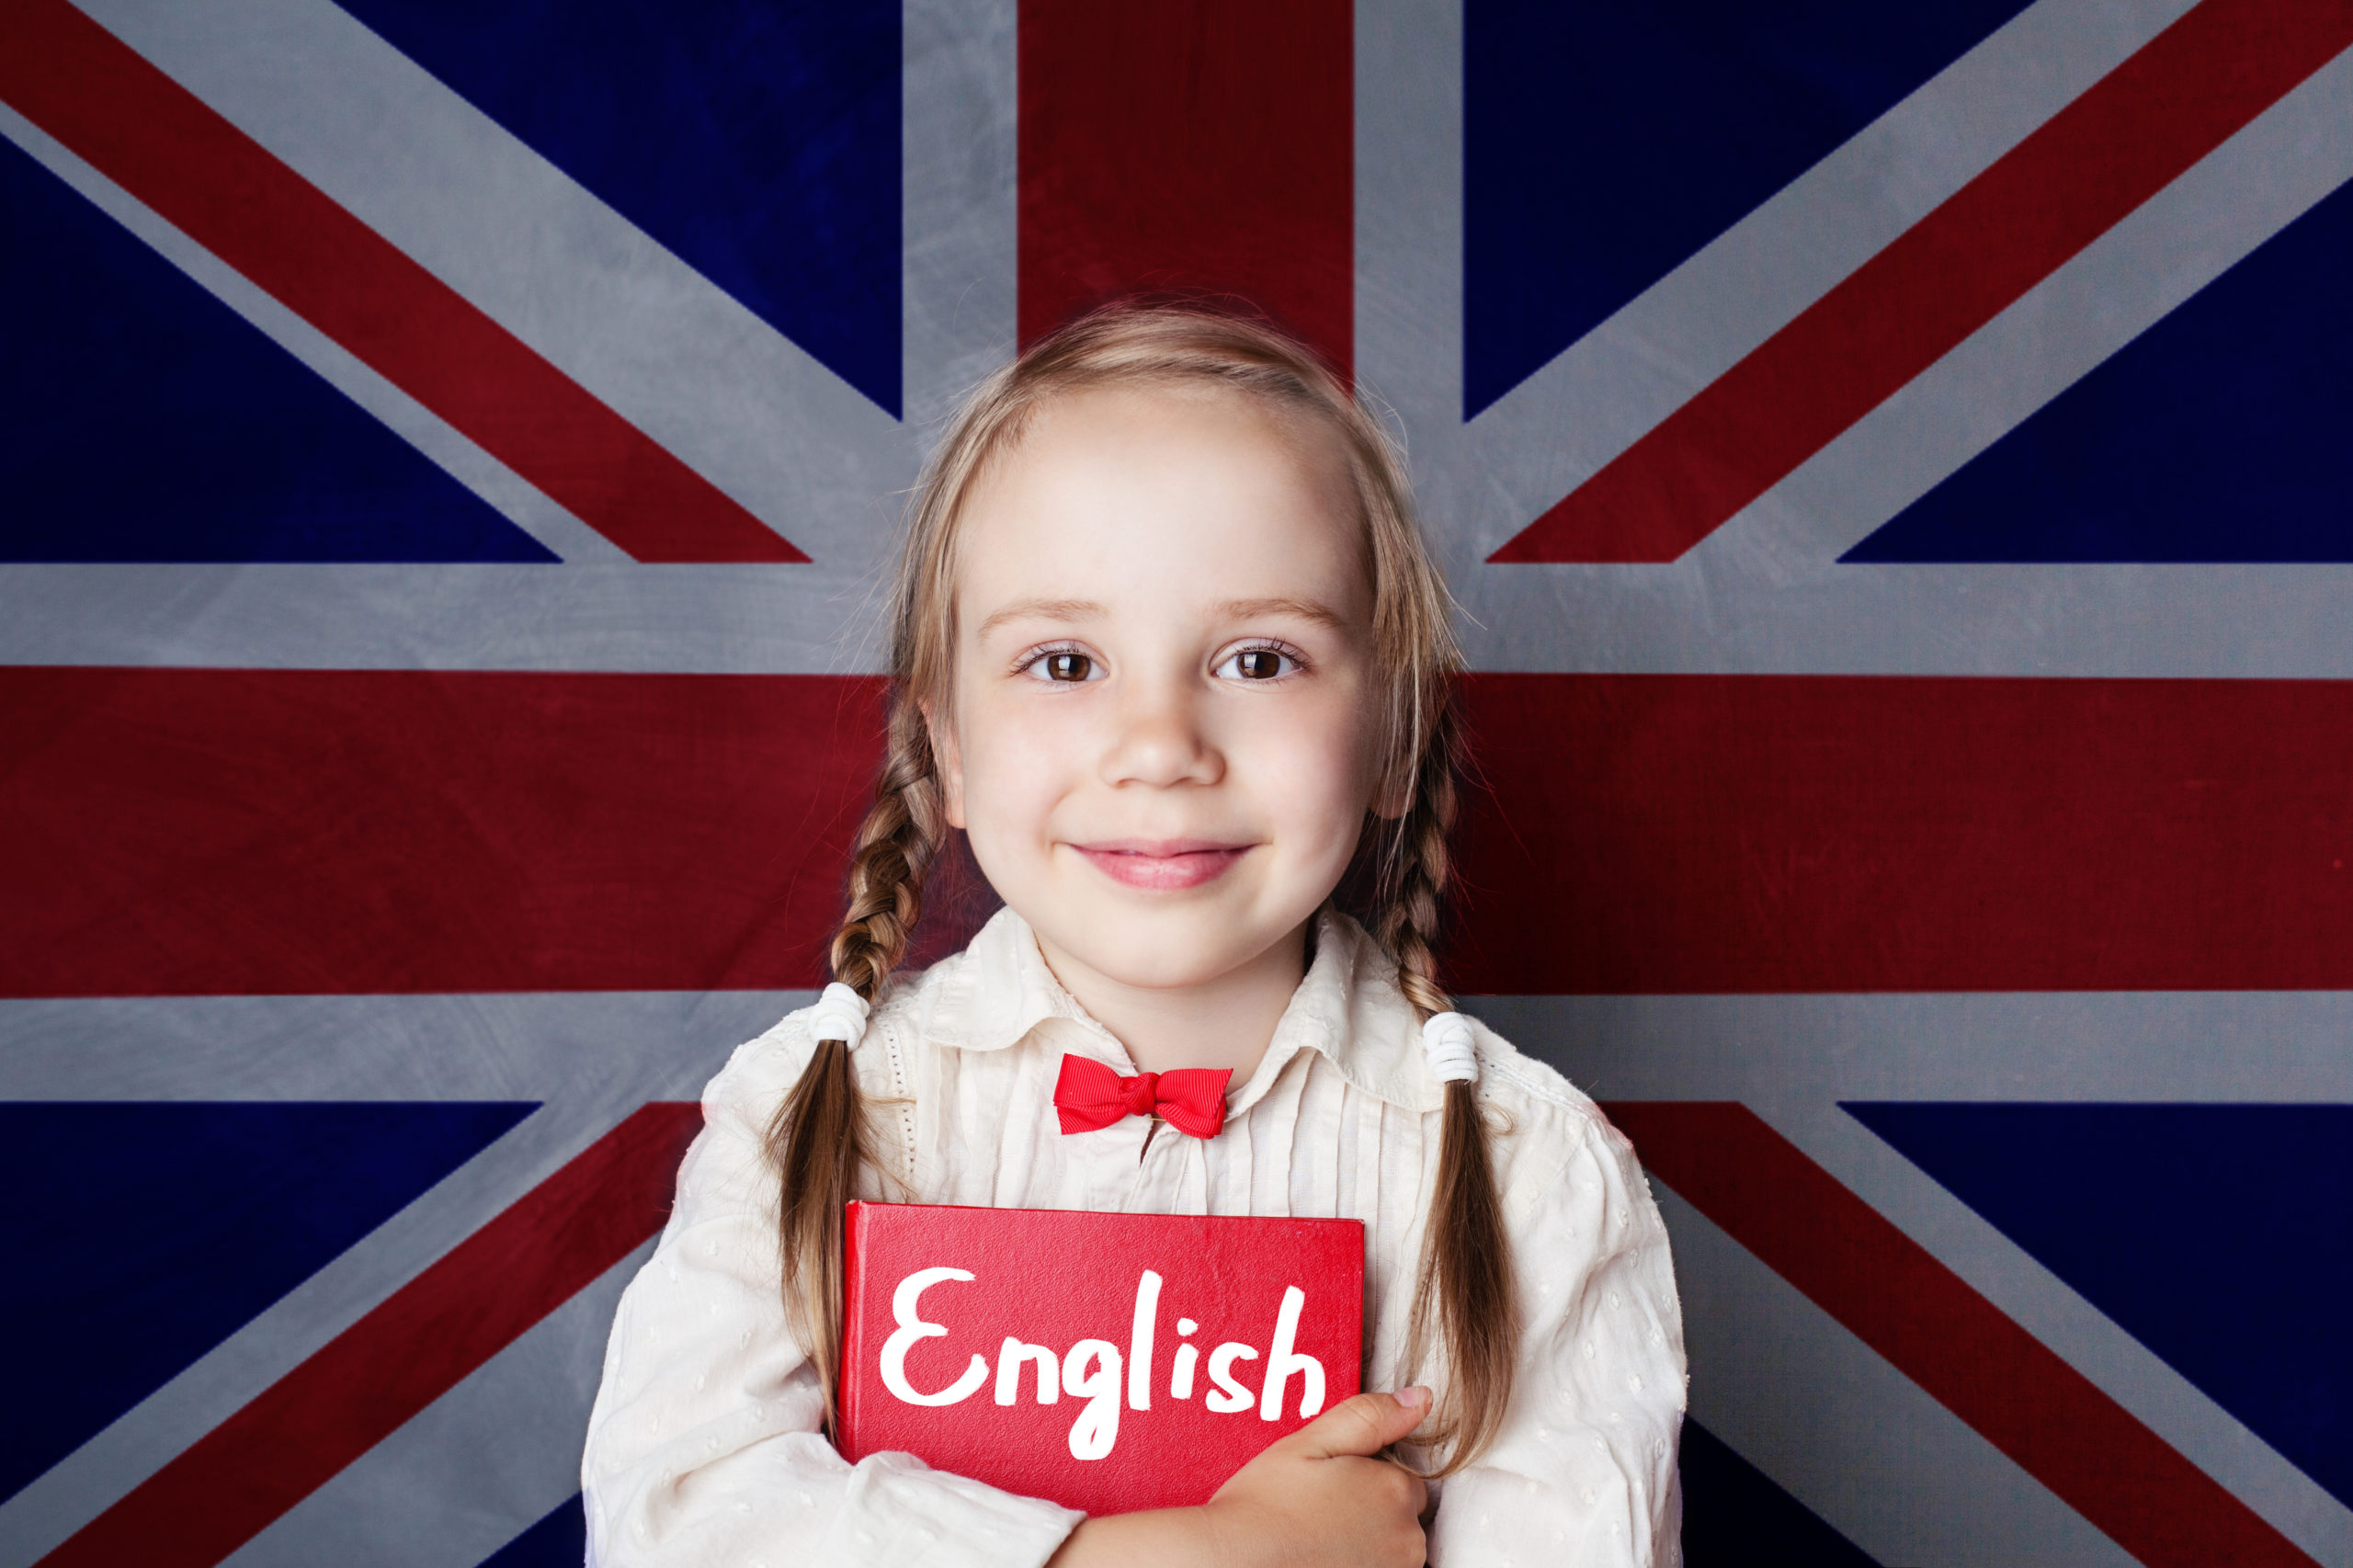 Да детка на английском. Английский для детей. Английский язык для детей. Ребенок с британским флагом. Ребенок с английским флагом.